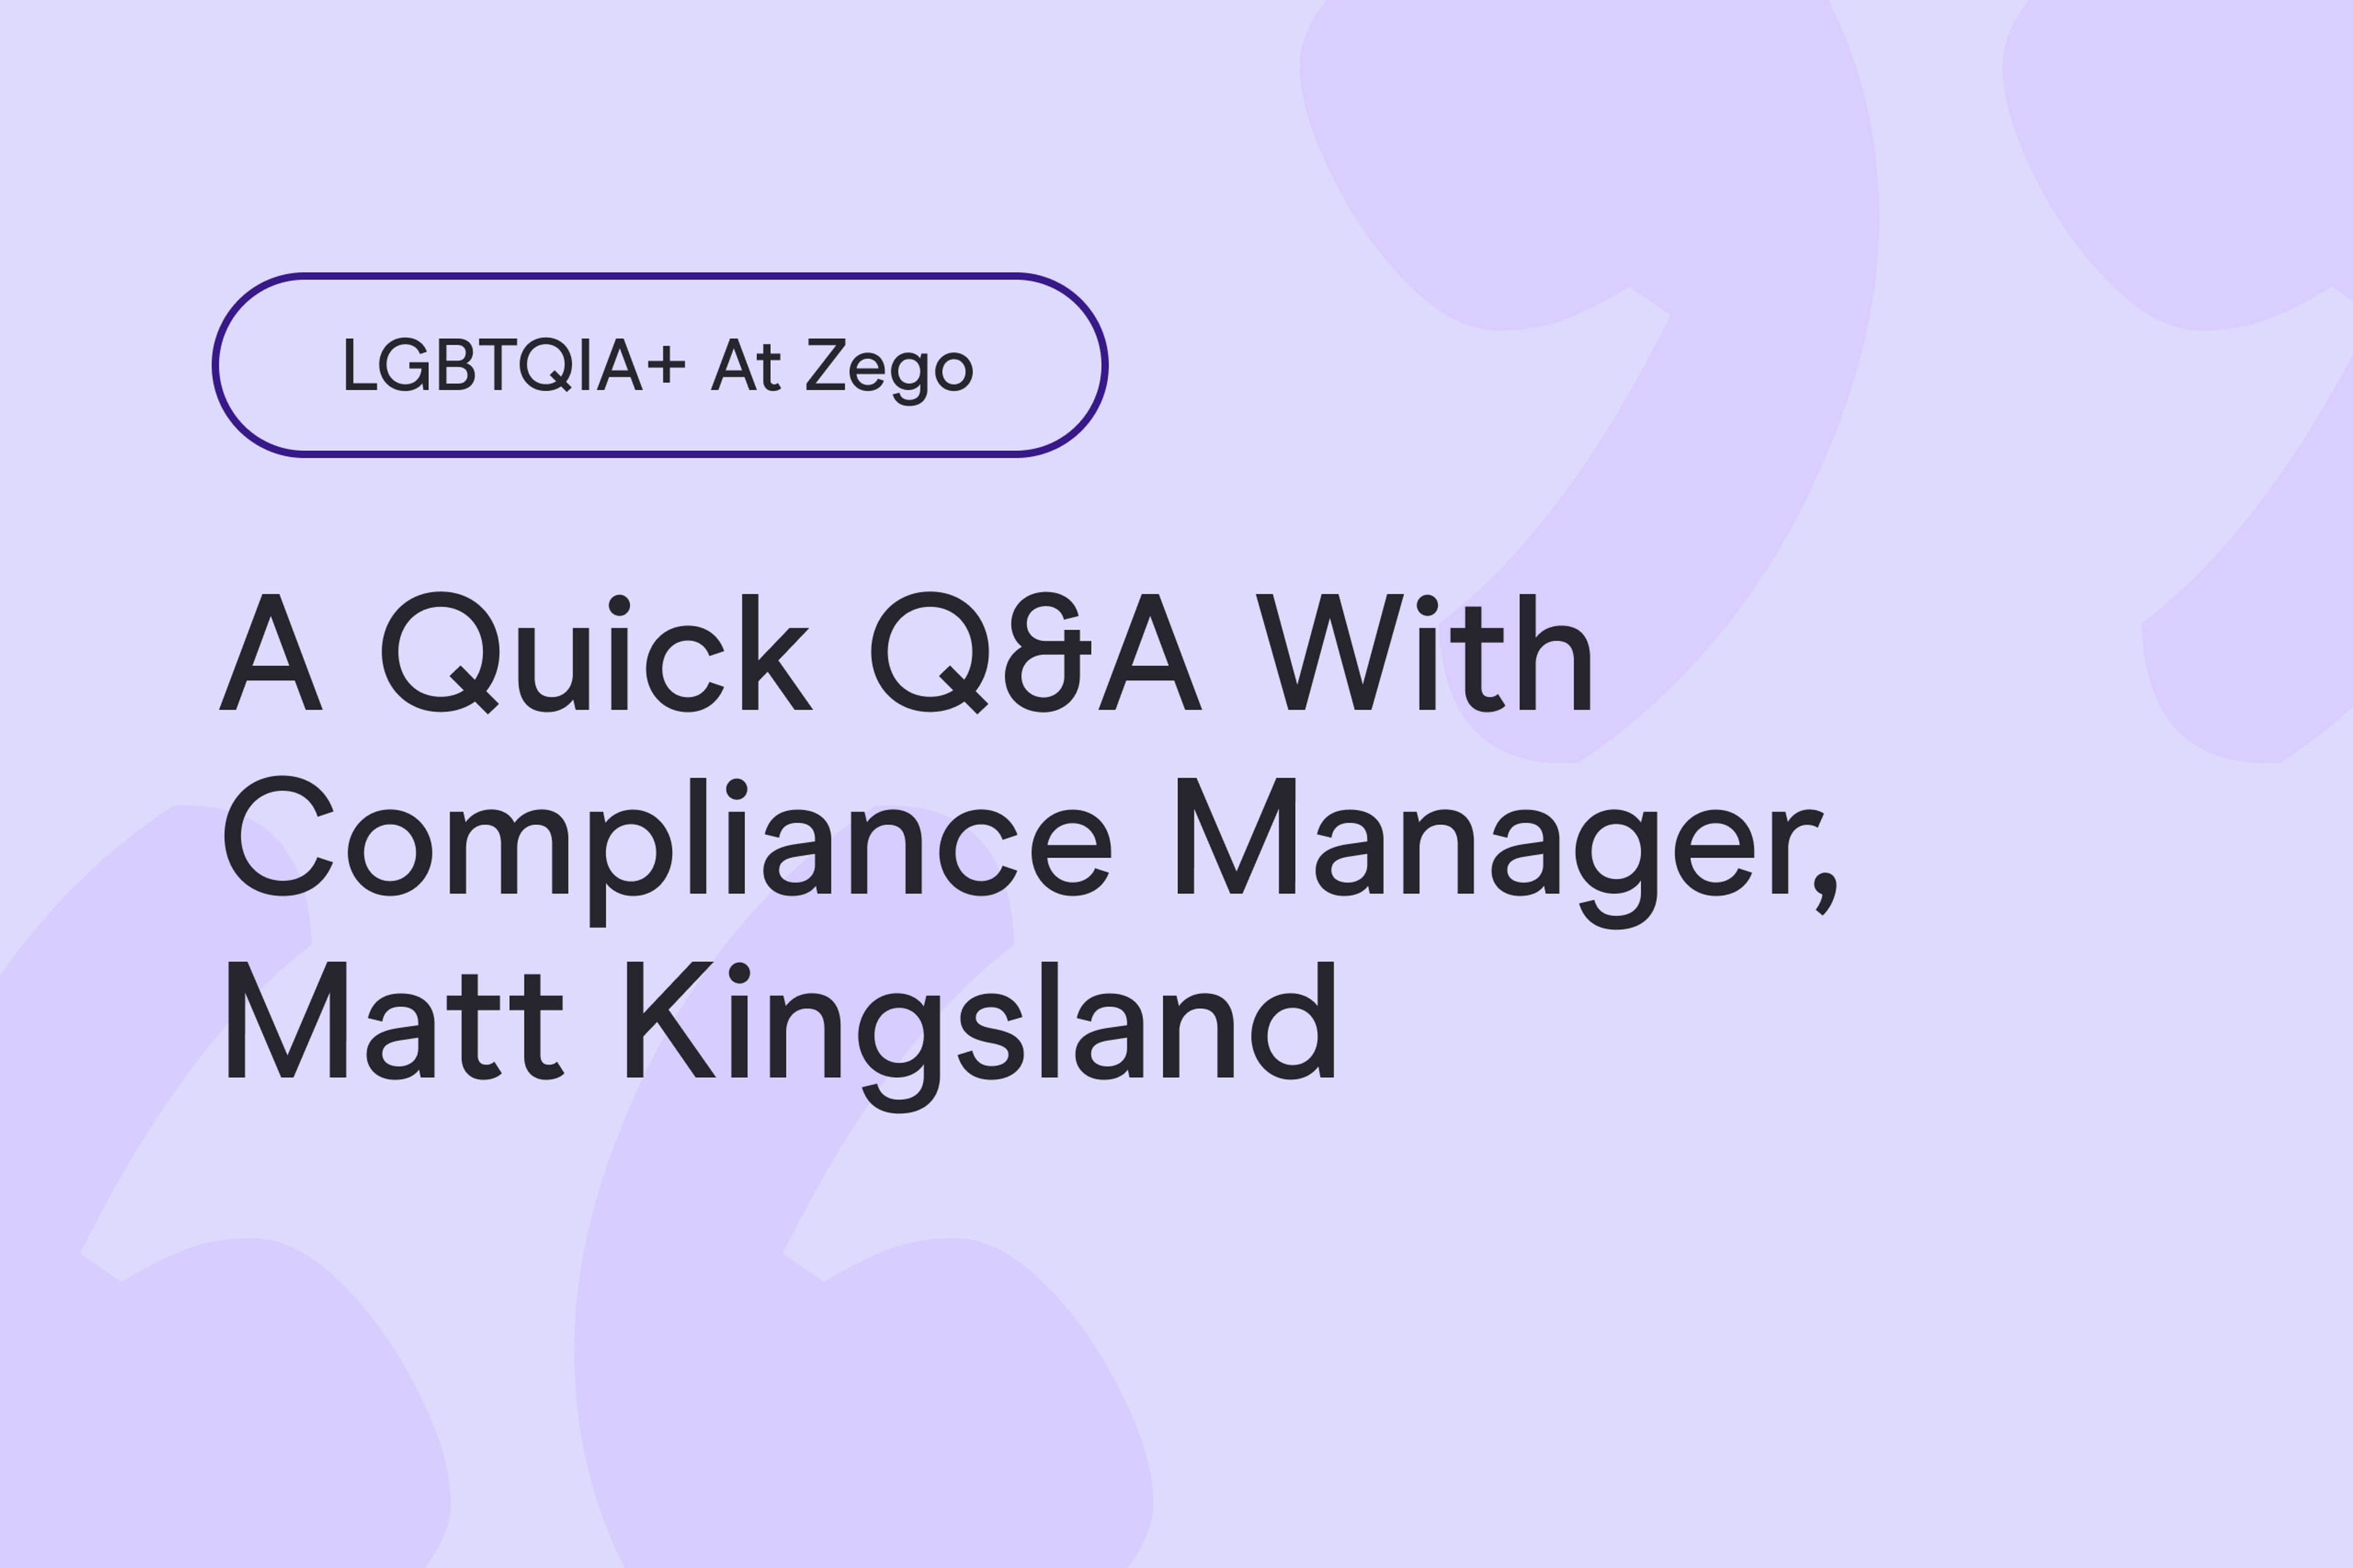 LGBTIQA+ at Zego: a quick Q&A with Compliance Manager, Matt Kingsland